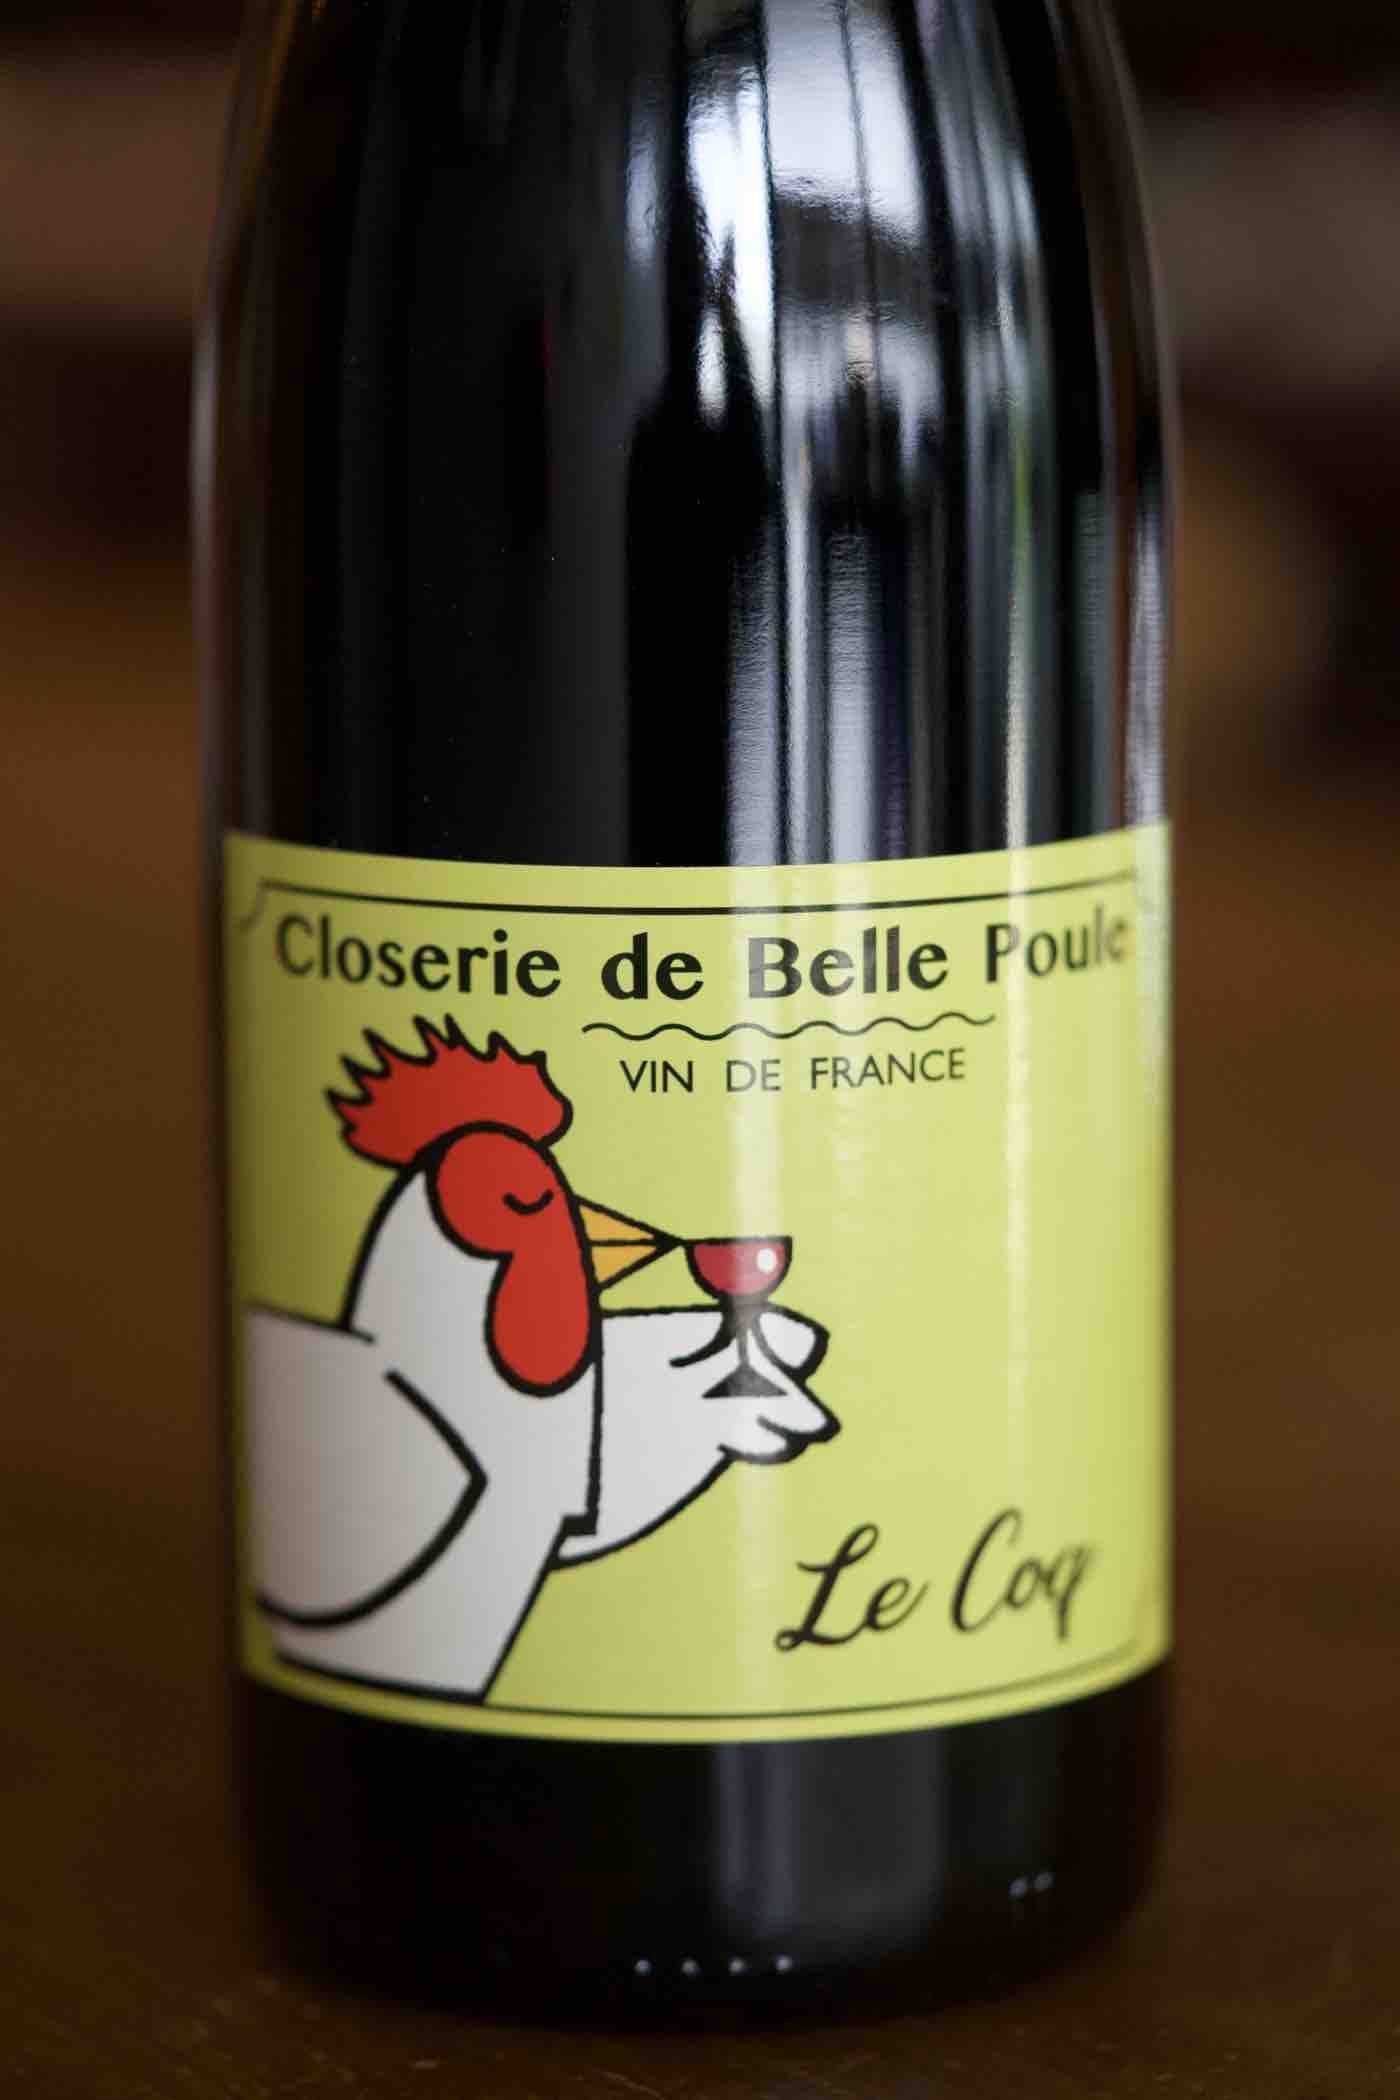 Vin de France Red Cabernet Sauvignon "Le Coq", Closerie de Belle Poule 2019